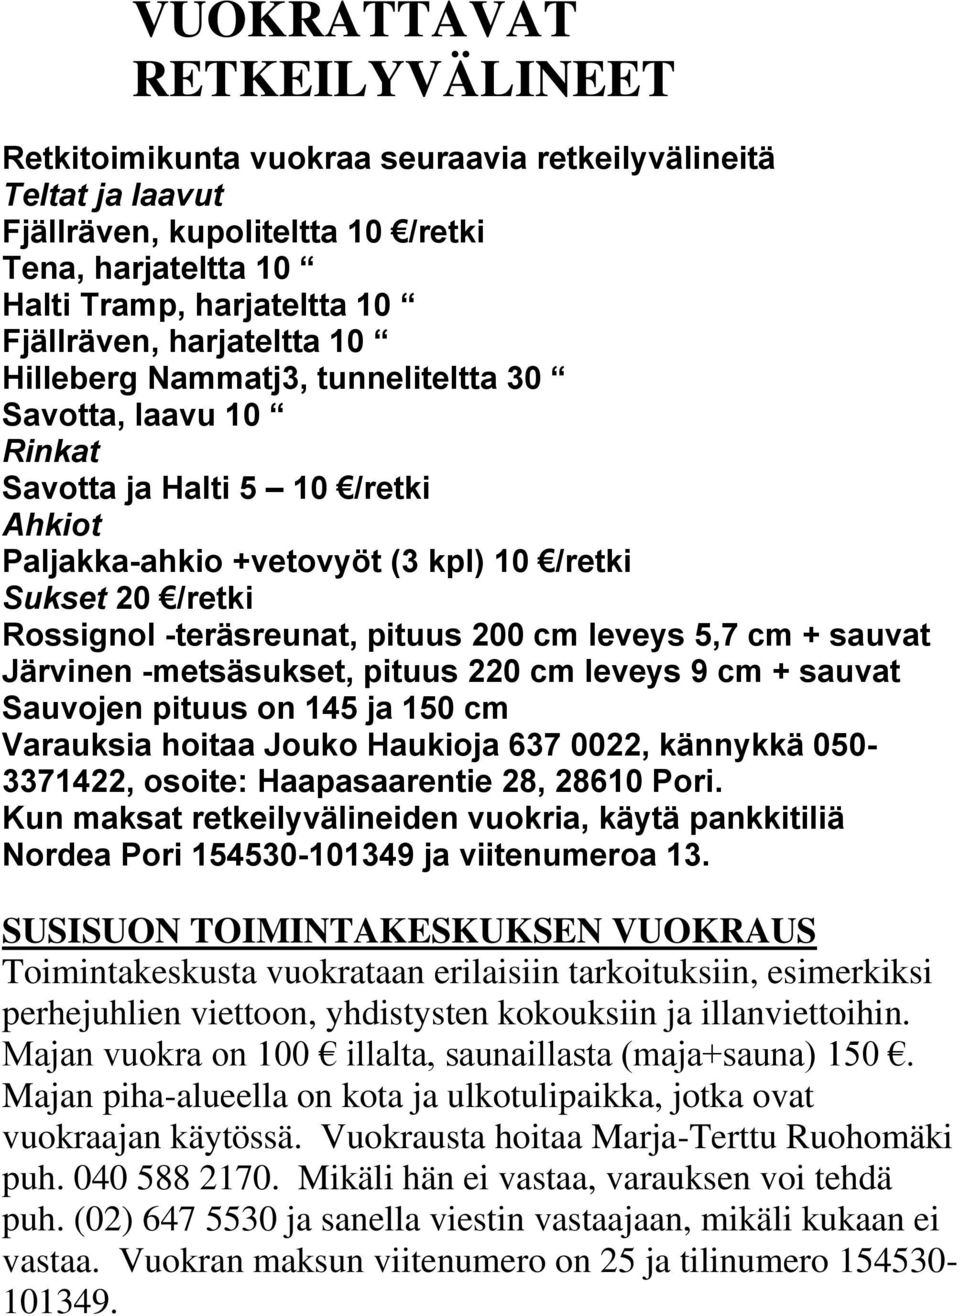 pituus 200 cm leveys 5,7 cm + sauvat Järvinen -metsäsukset, pituus 220 cm leveys 9 cm + sauvat Sauvojen pituus on 145 ja 150 cm Varauksia hoitaa Jouko Haukioja 637 0022, kännykkä 050-3371422, osoite: